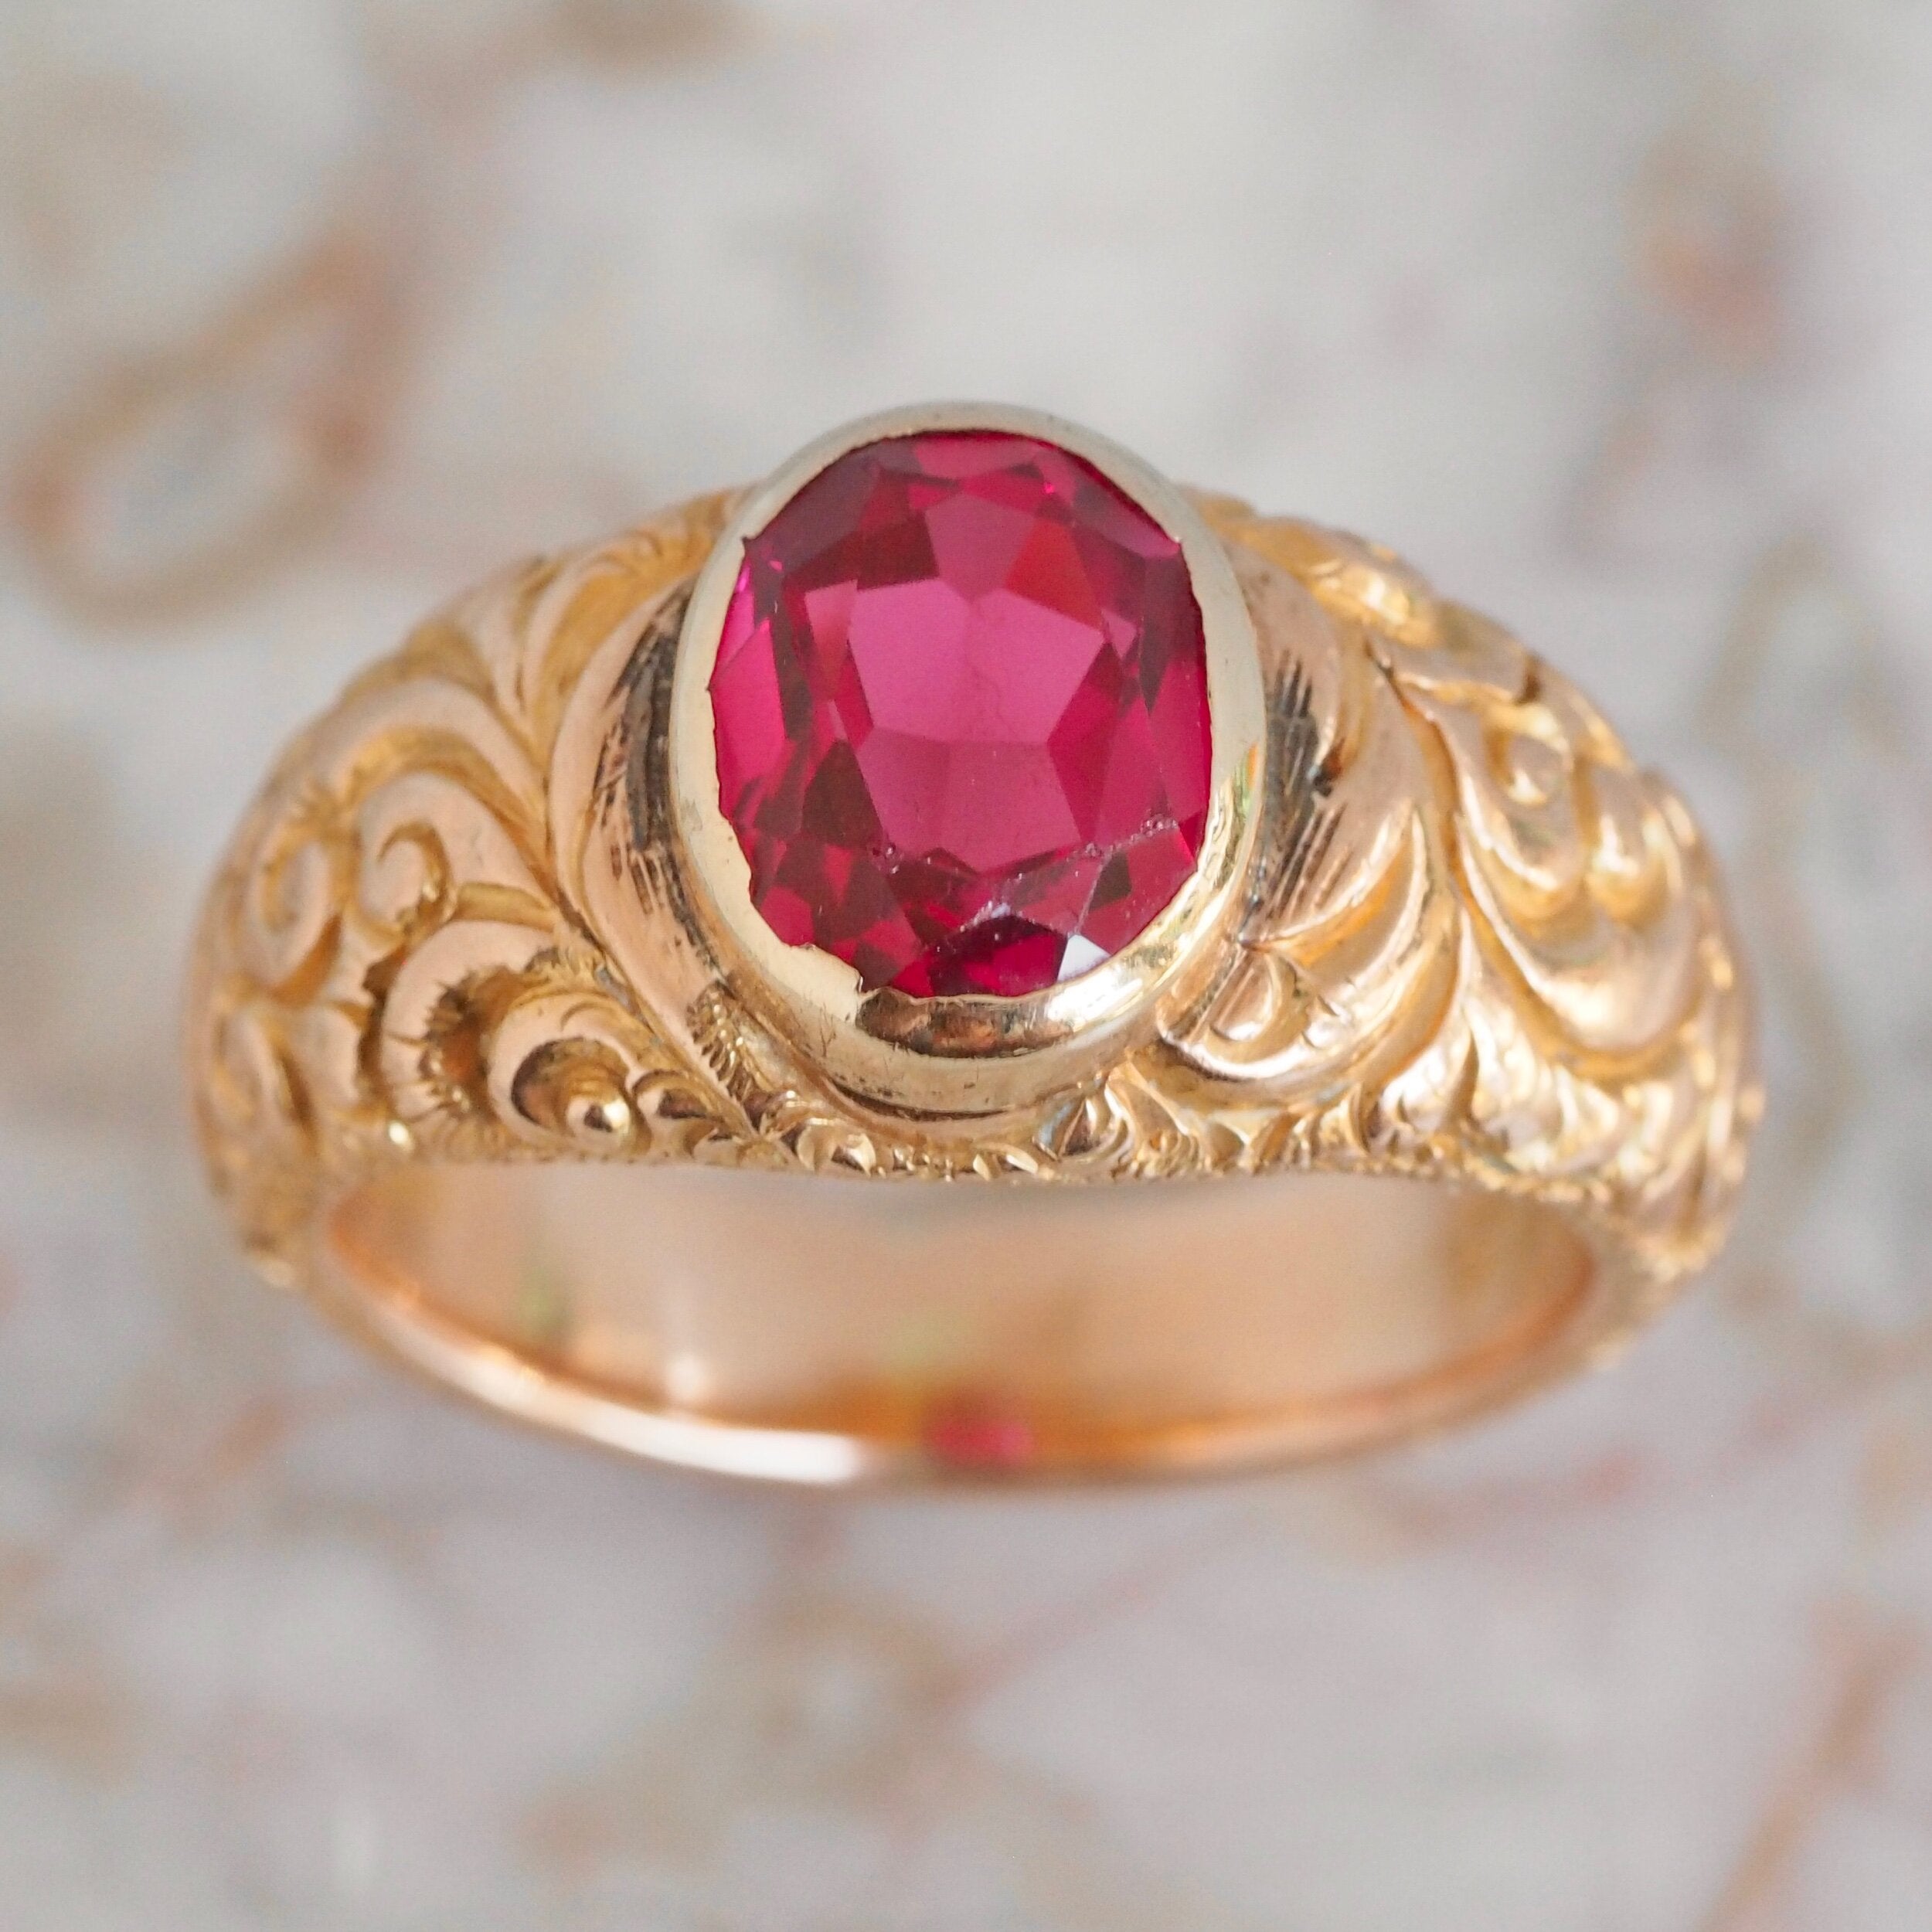 Antique Victorian Engraved 14k Gold Bezel Set Ruby Ring